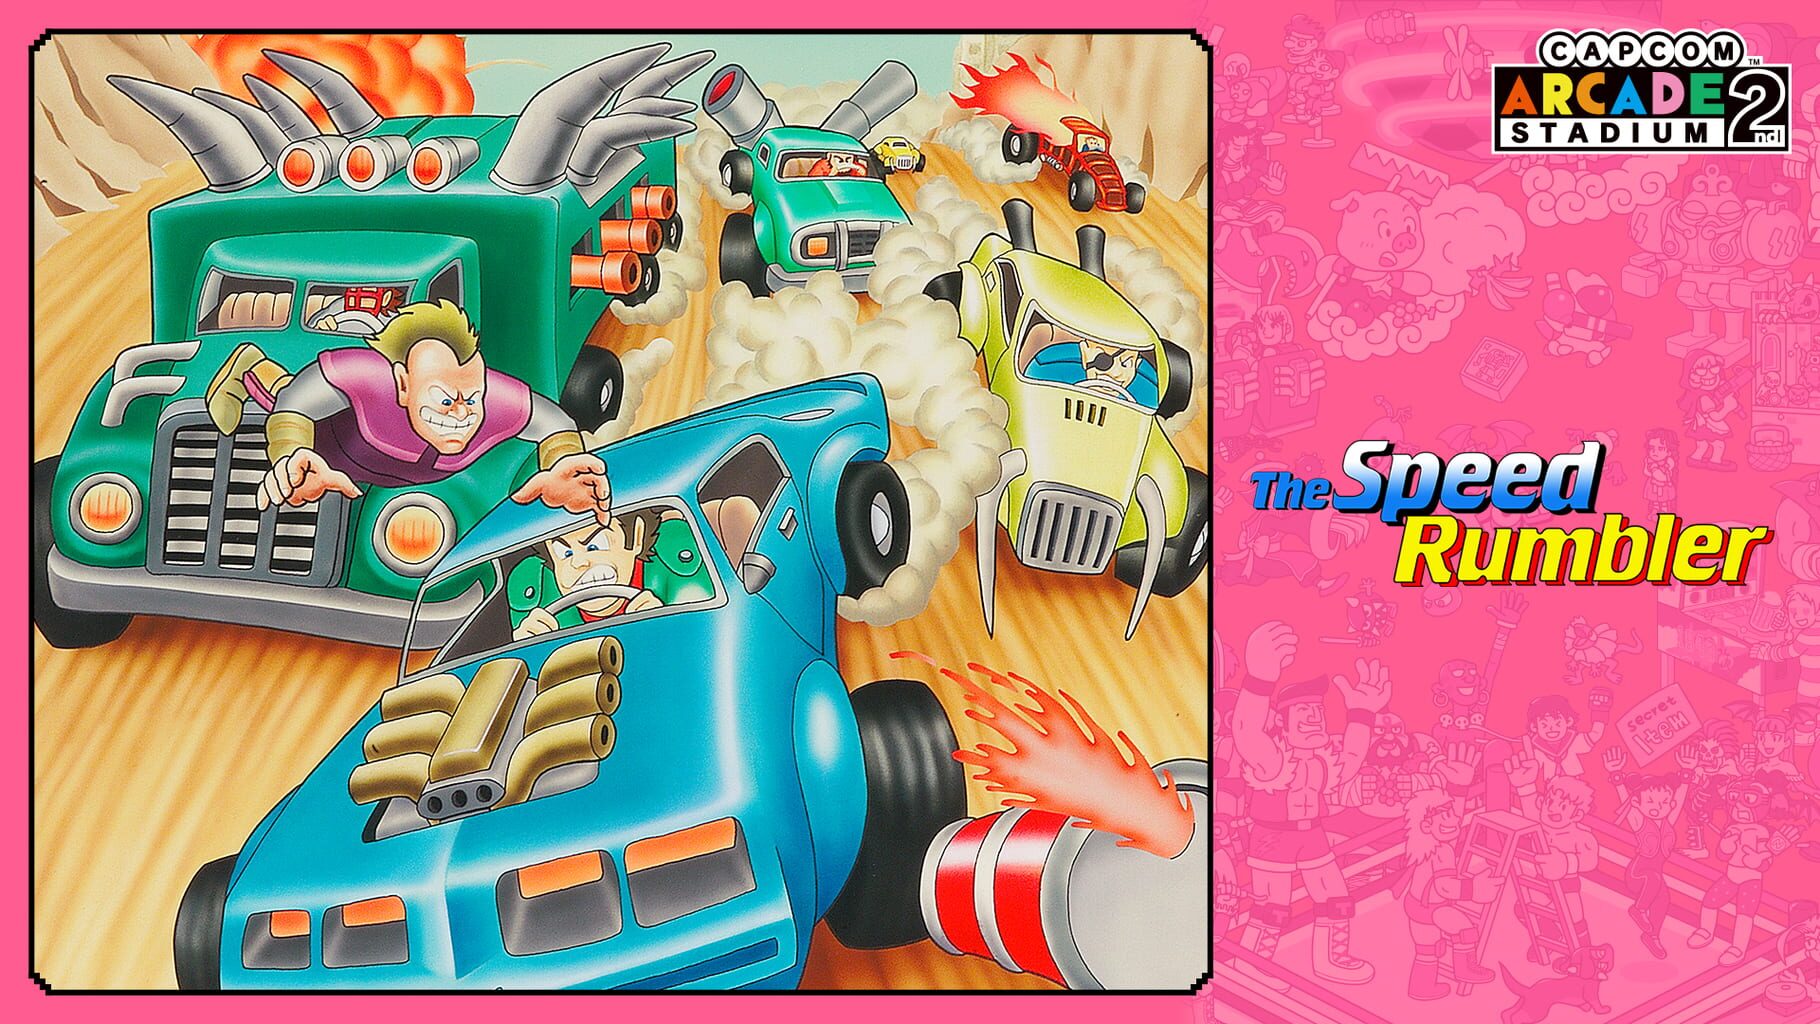 Capcom Arcade 2nd Stadium: The Speed Rumbler artwork